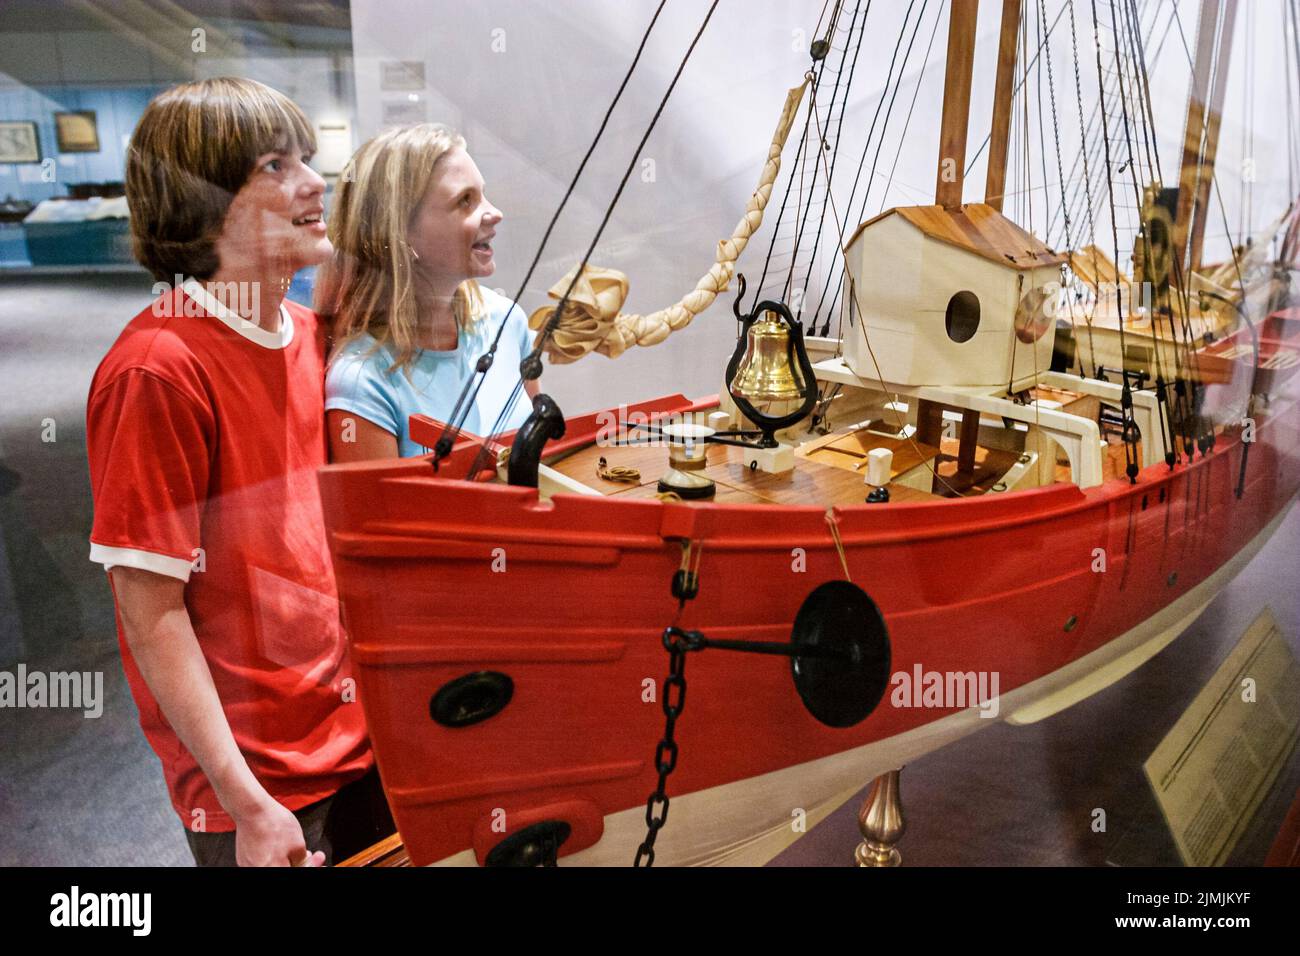 Virginia Newport News Musée et parc de Mariners, histoire exposition collection visiteurs regardant maquette de bateau, amis adolescents adolescents adolescents garçon fille Banque D'Images